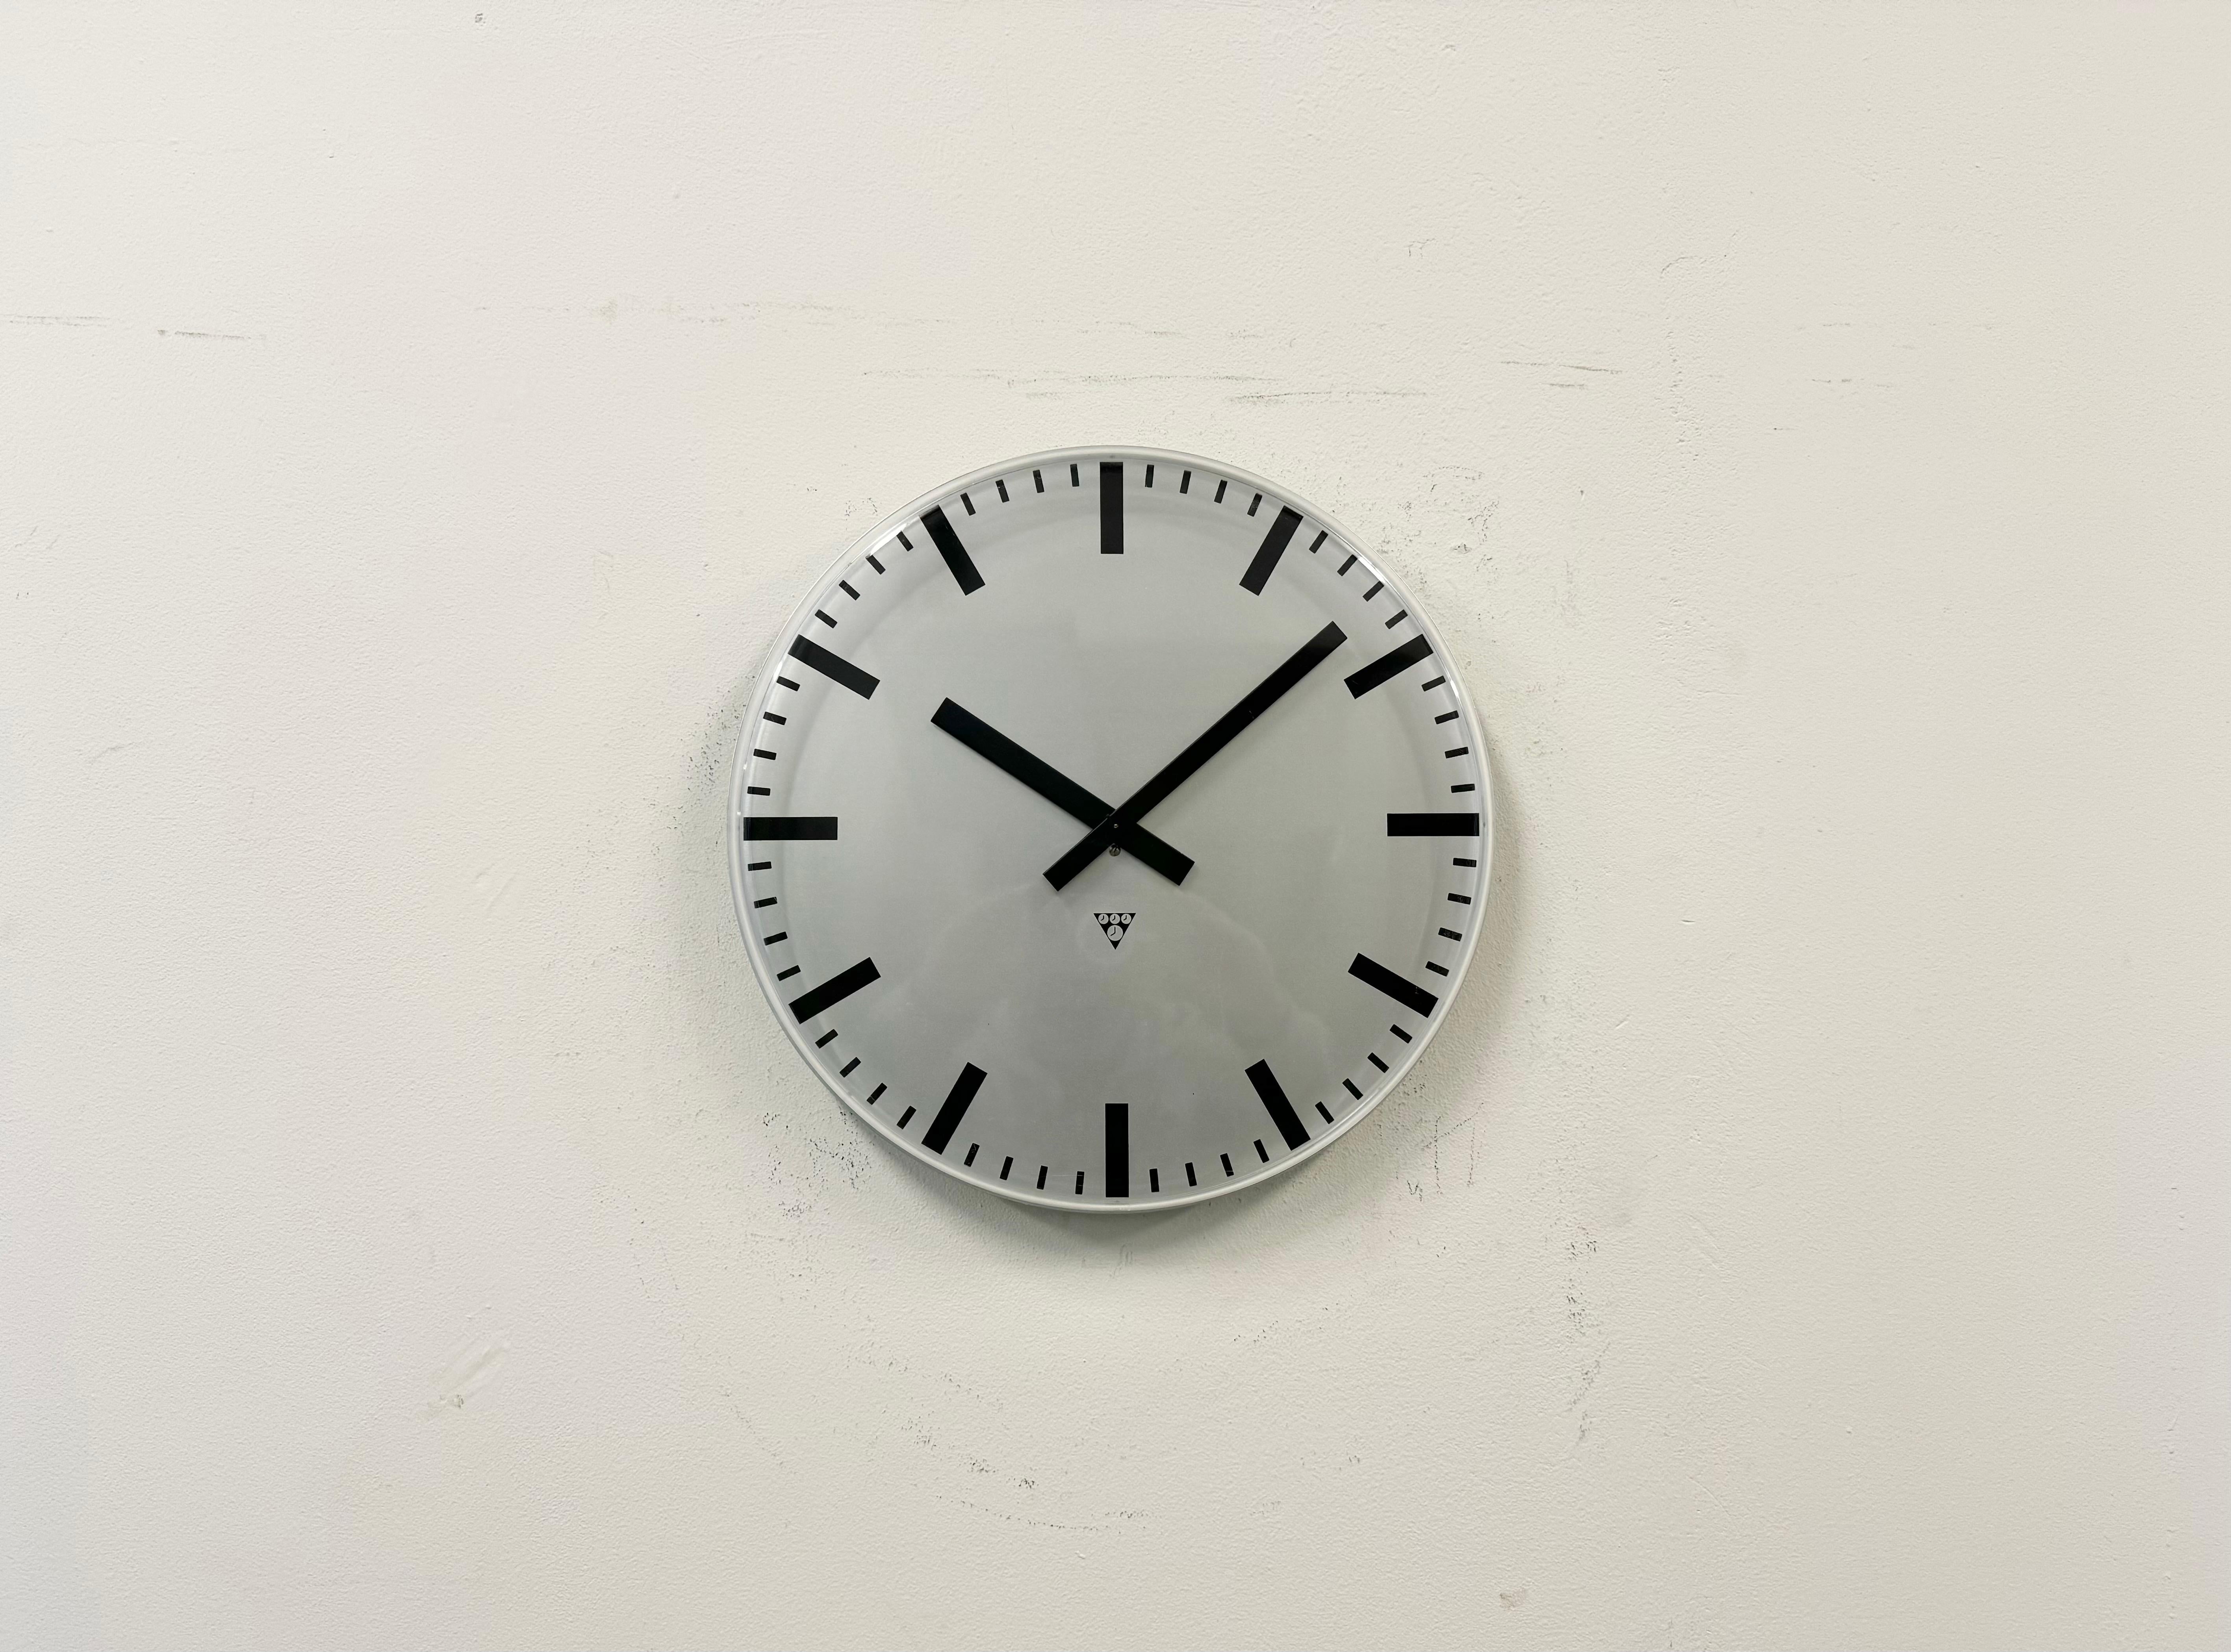 Cette horloge murale industrielle a été produite par Pragotron dans l'ancienne Tchécoslovaquie au cours des années 1980. Il est doté d'un cadran en aluminium gris (argenté) et d'un couvercle en verre transparent en plastique incurvé. La pièce a été